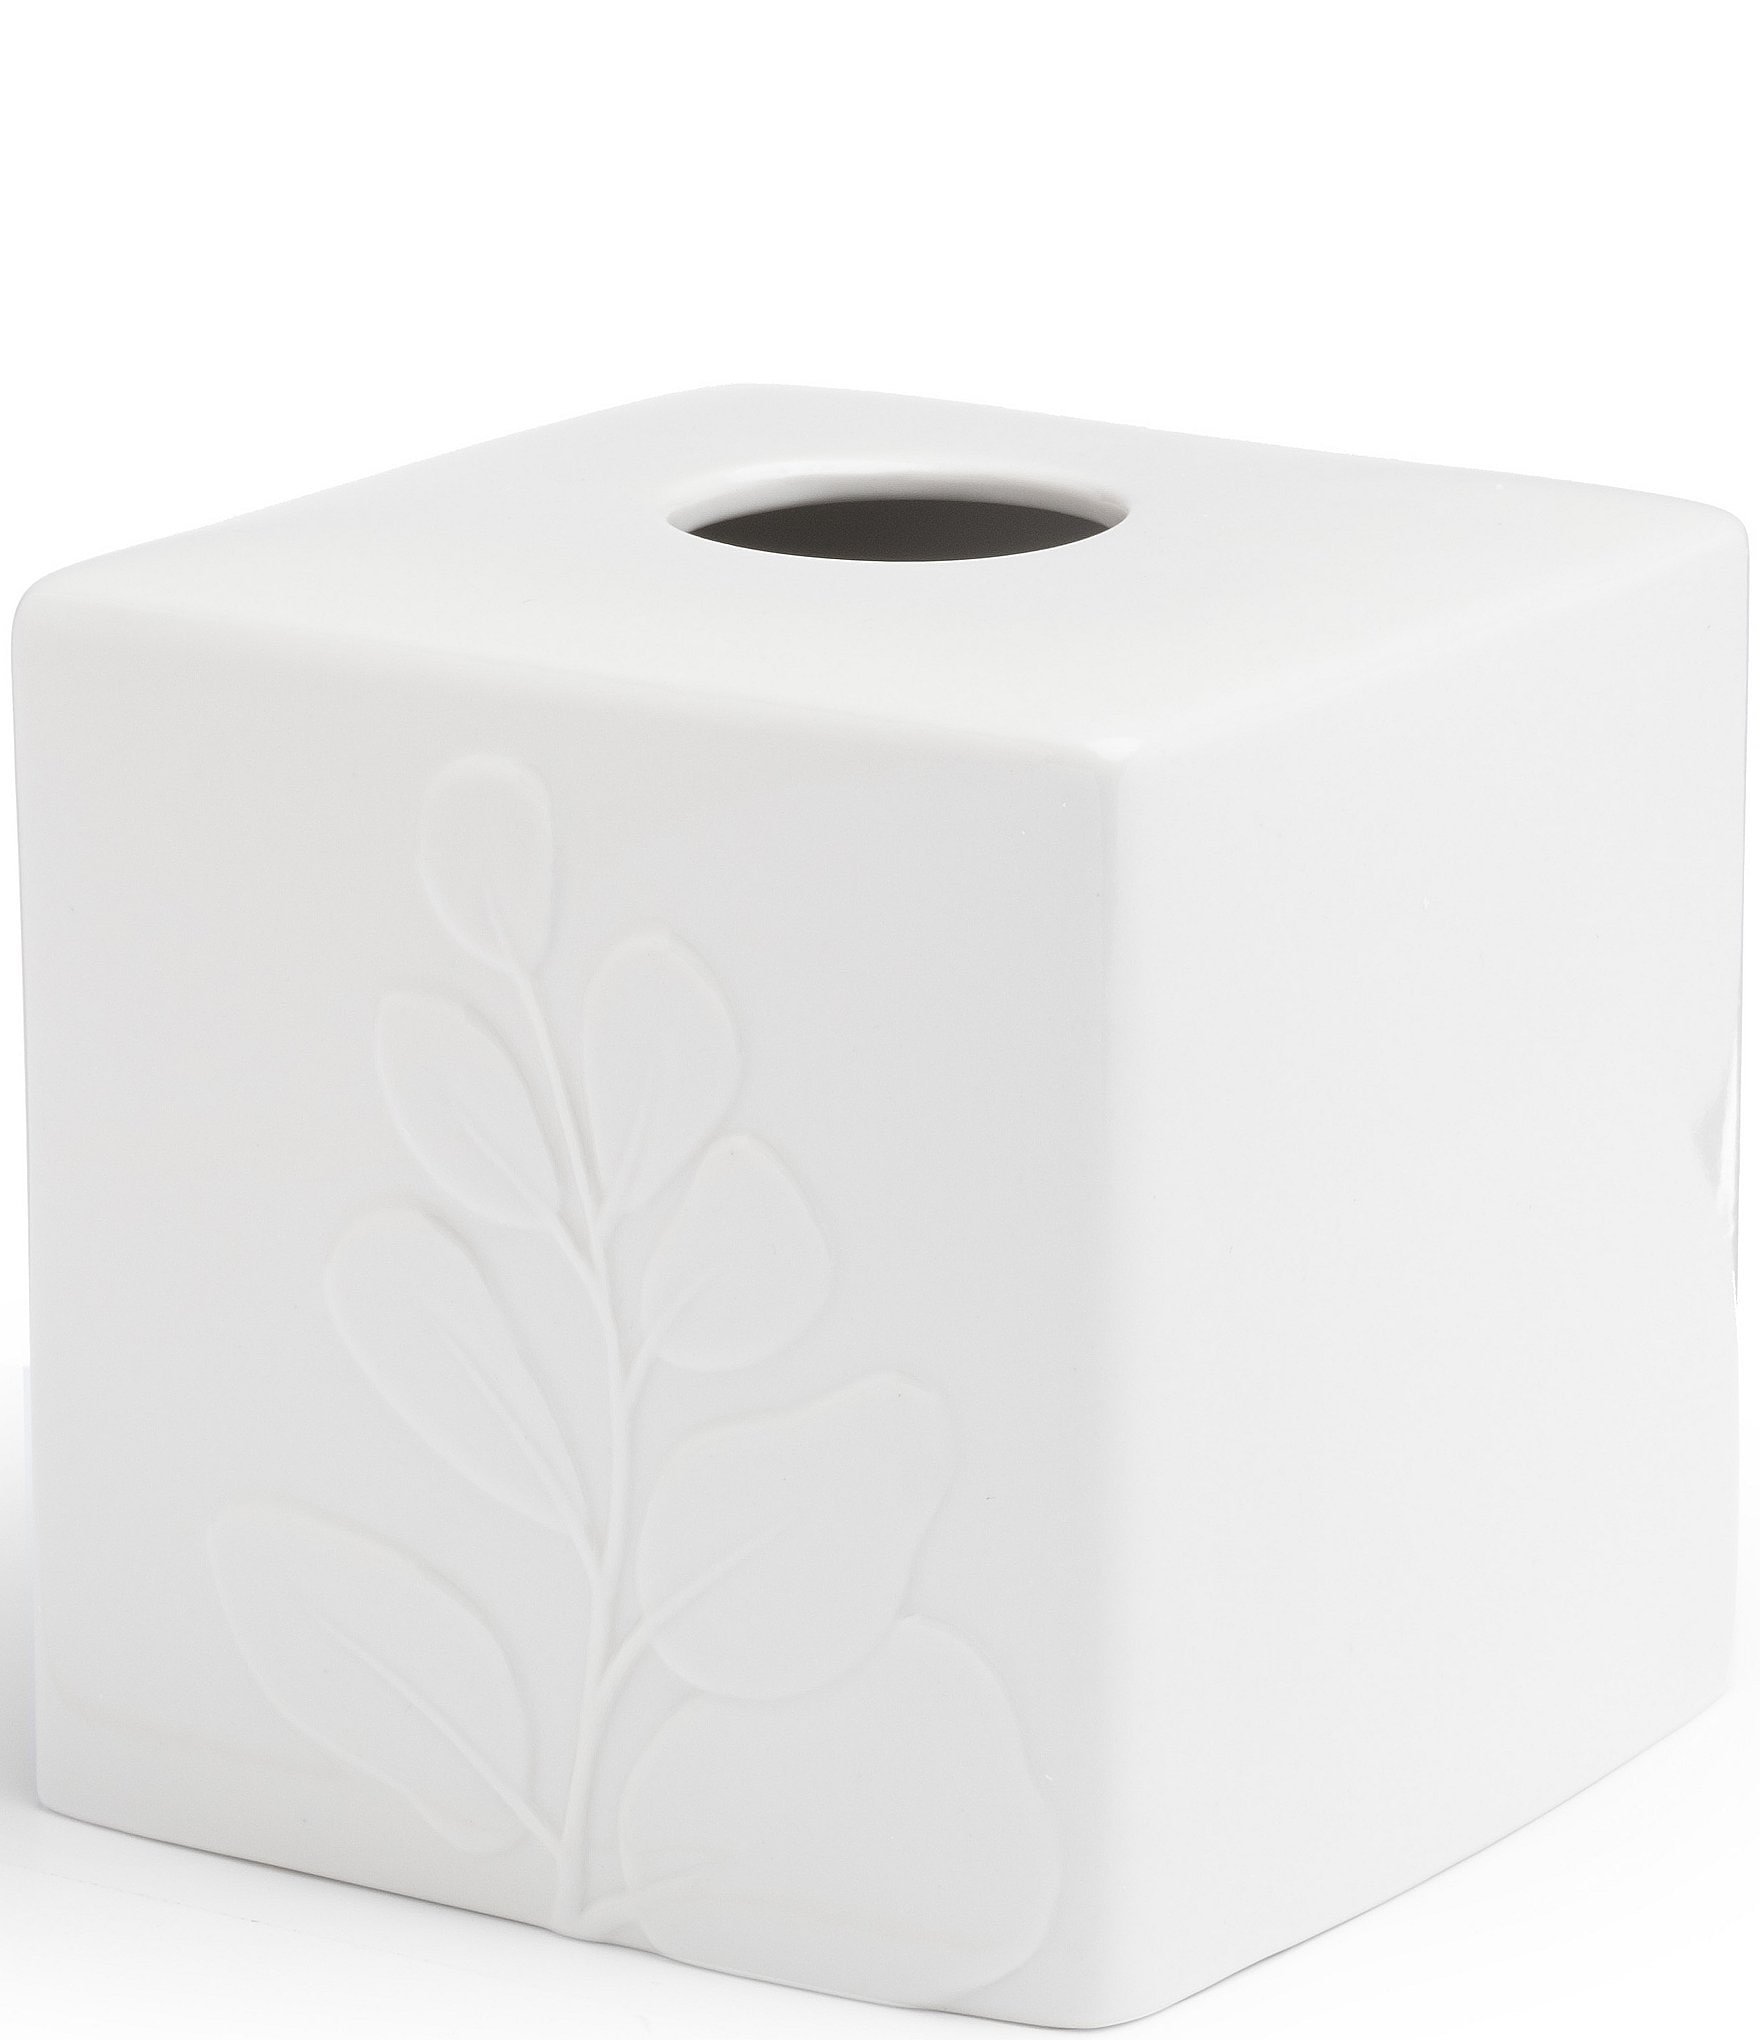 white plastic tissue box cover